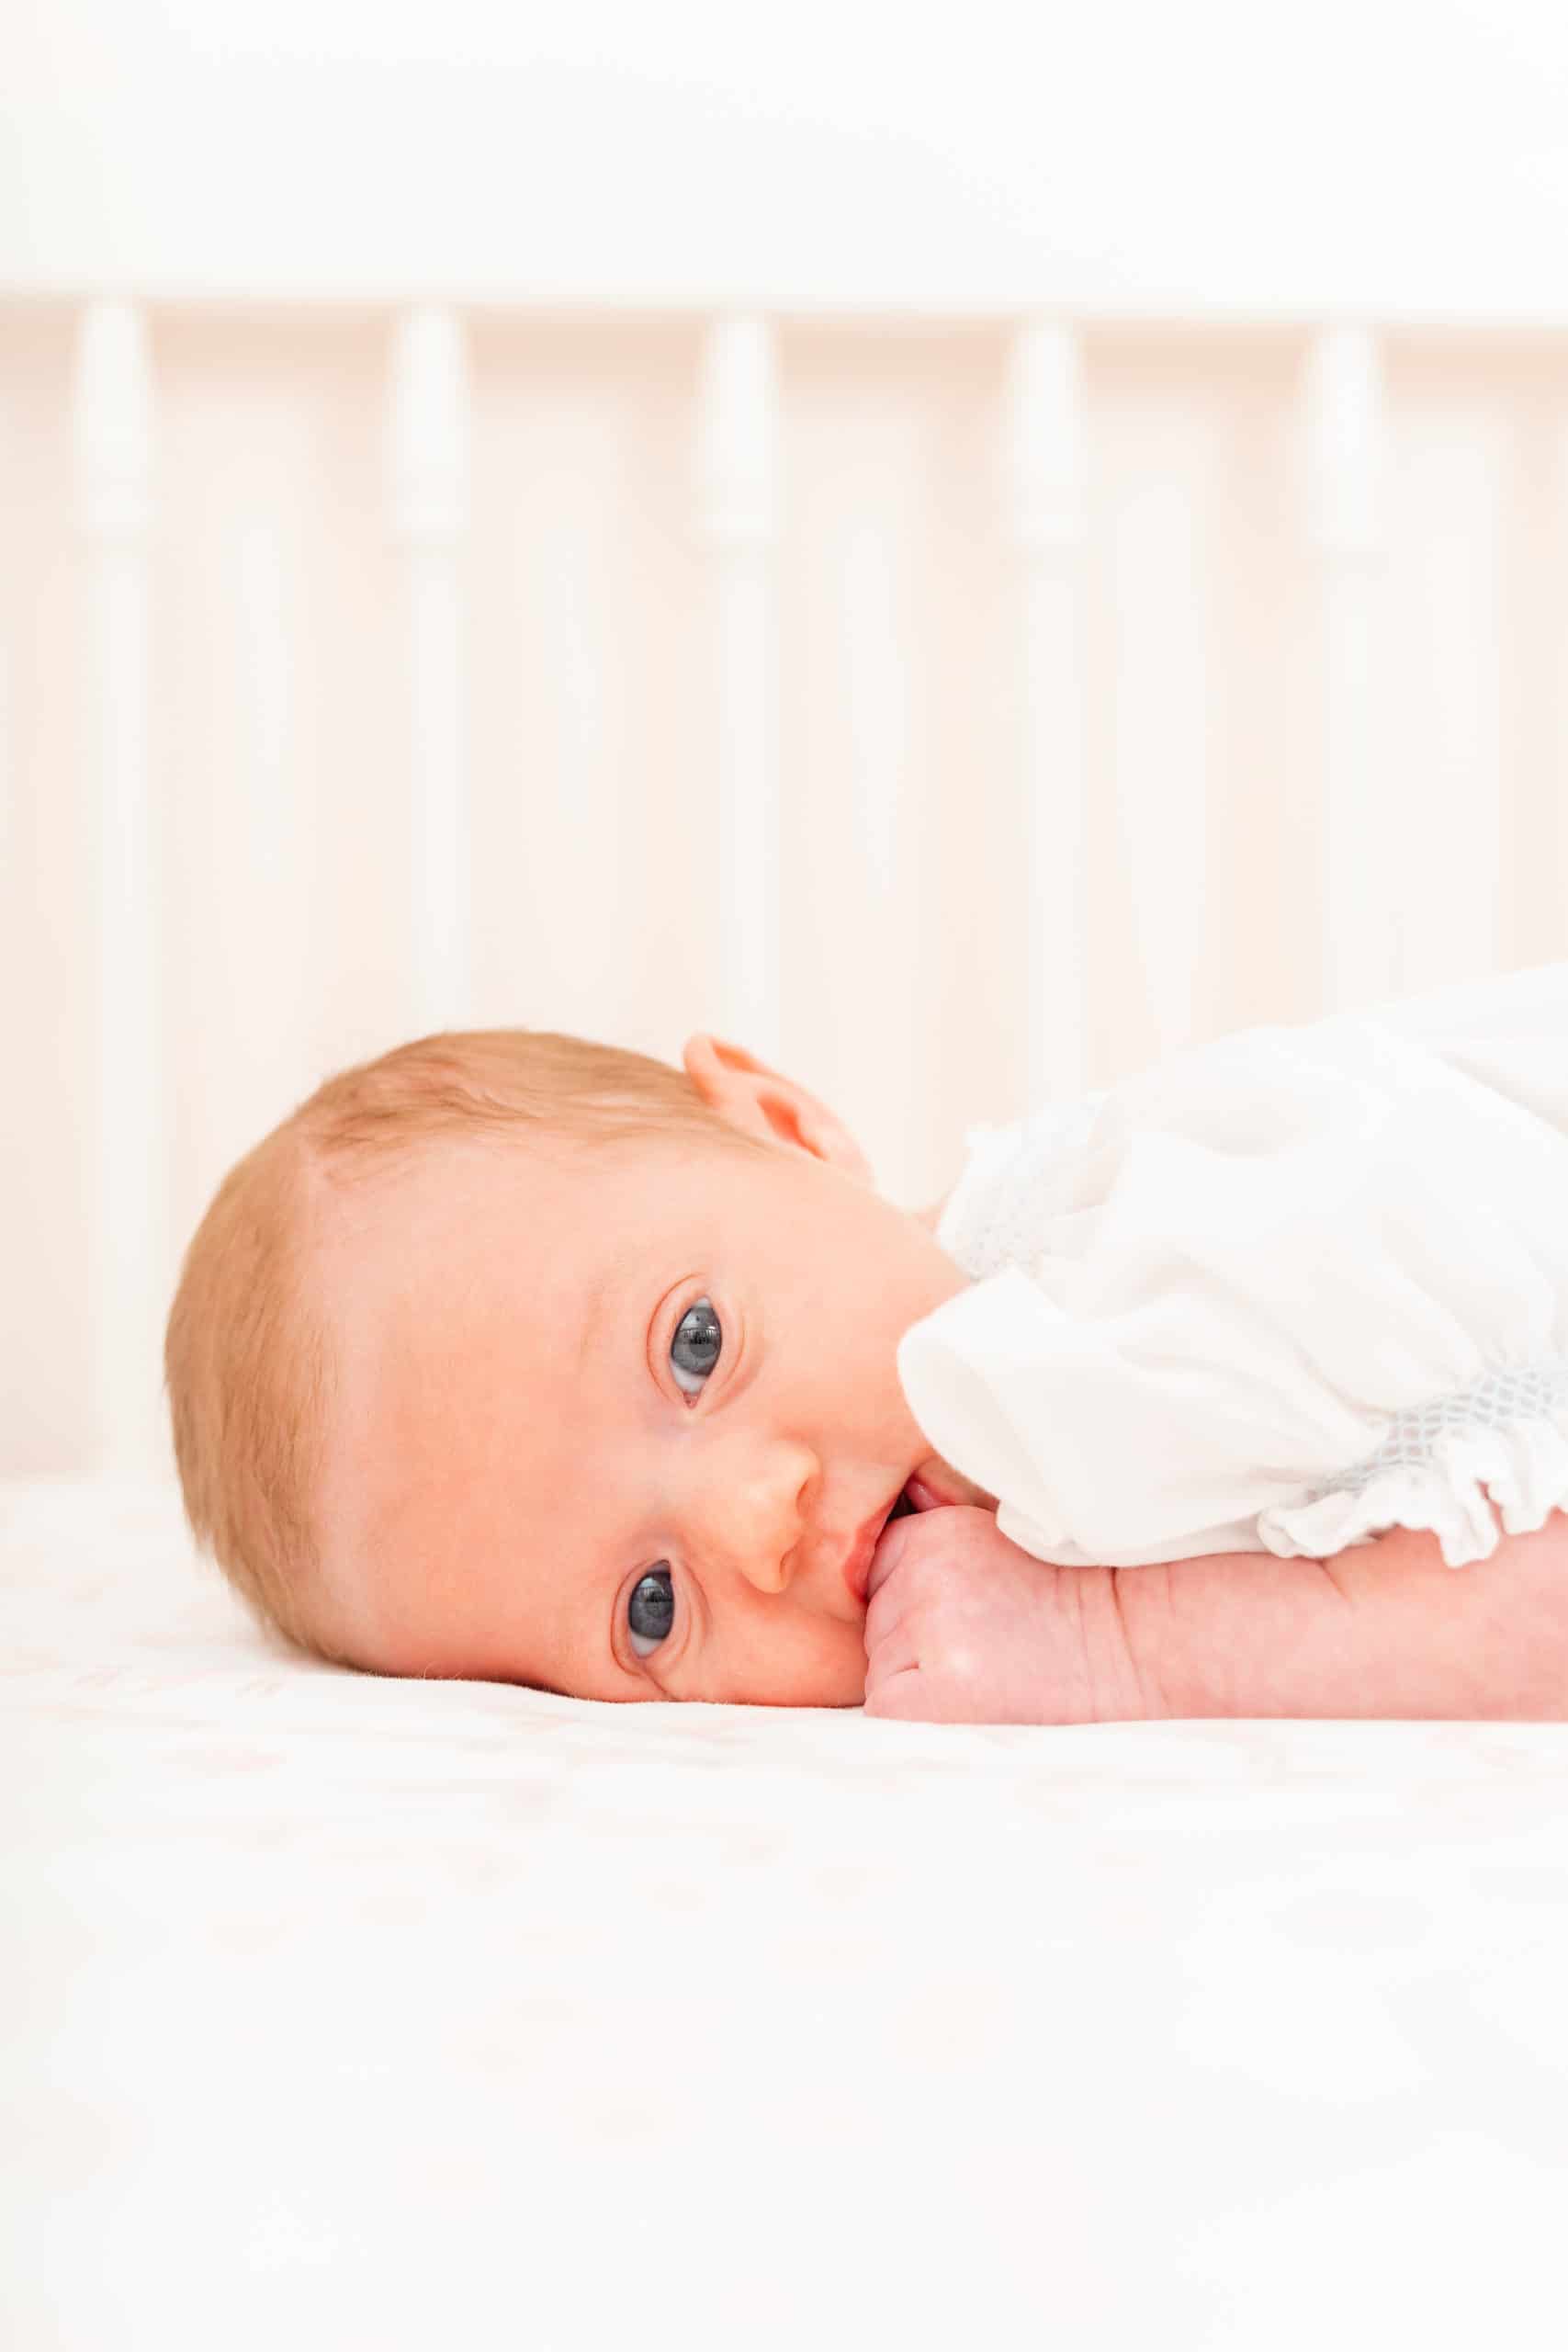 Chattanooga newborn photography _ newborn in crib